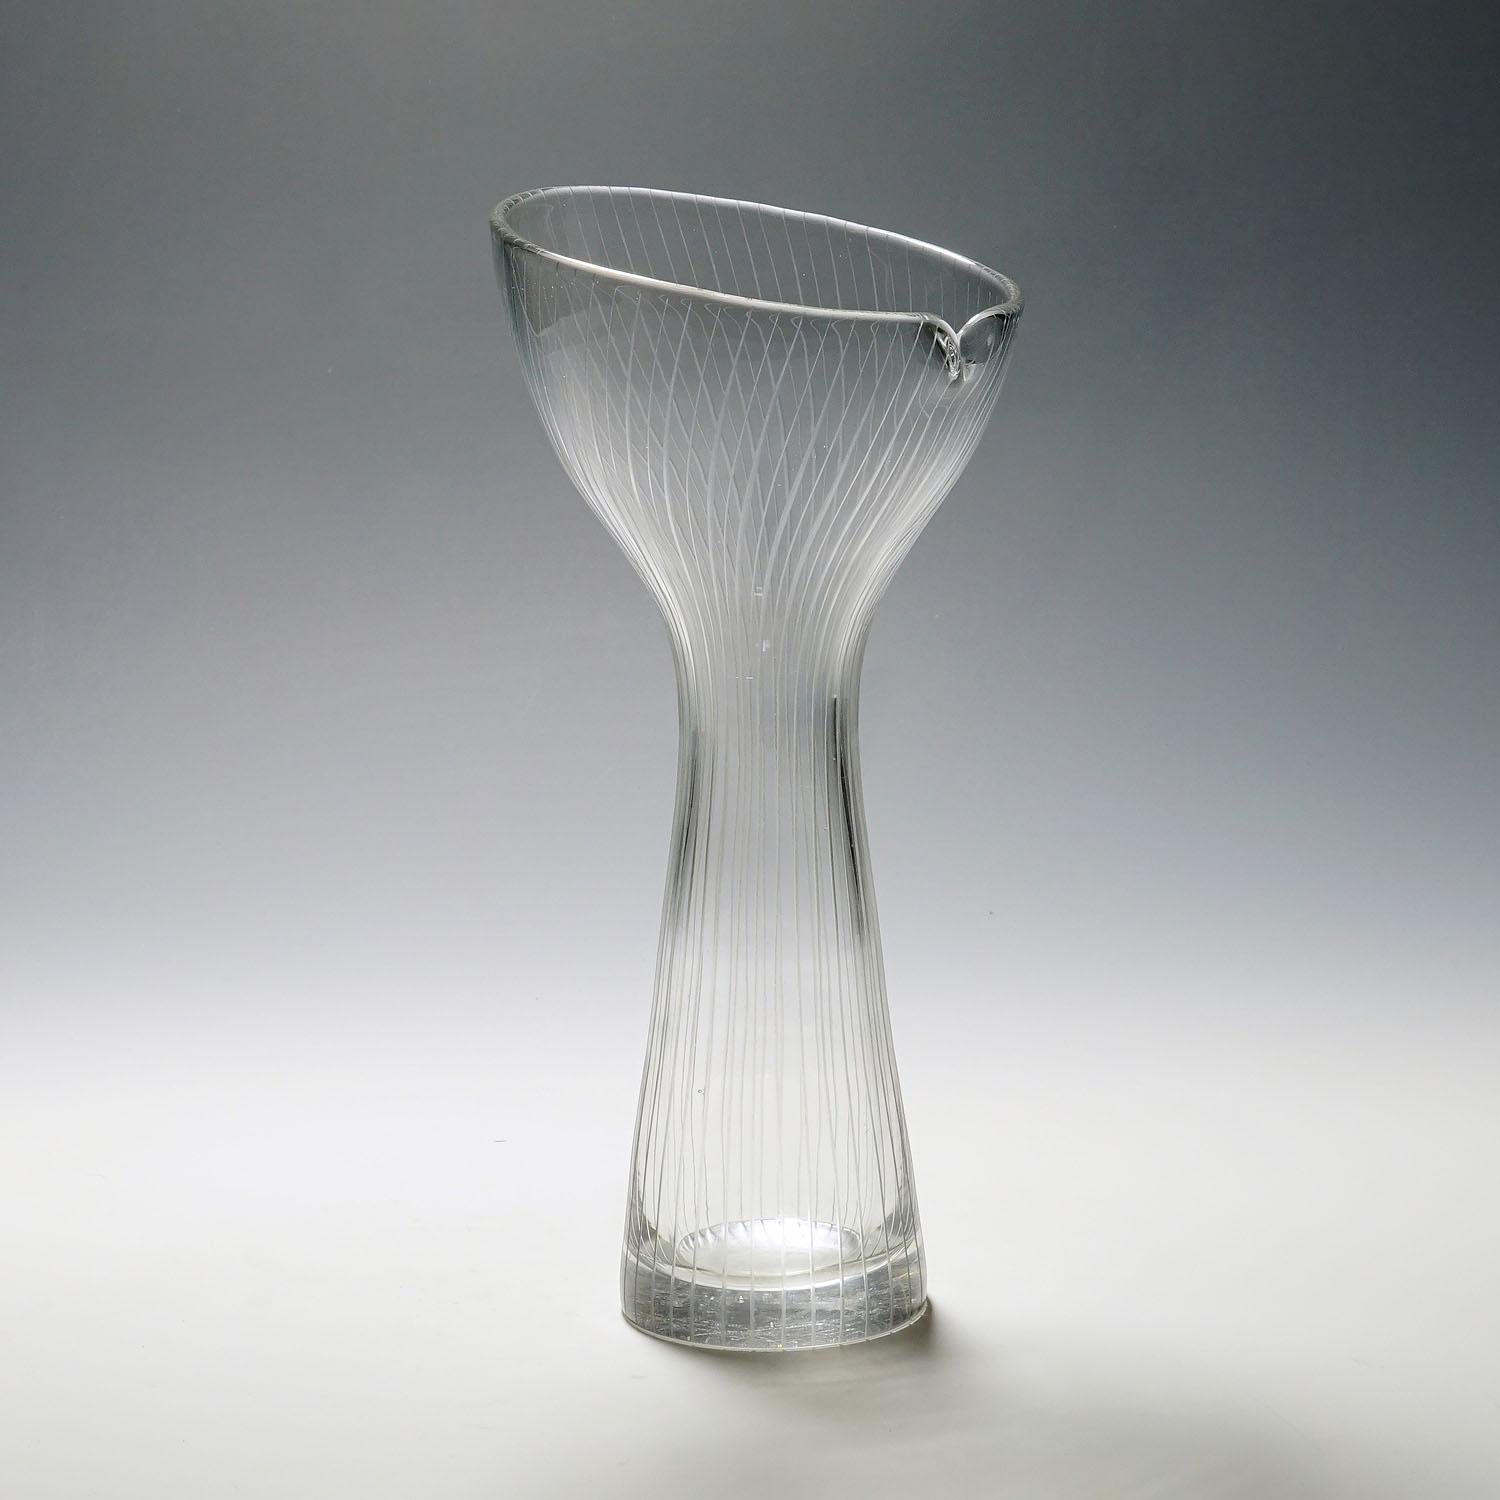 Vase vintage en verre d'art par Tapio Wirkkala pour Iittala 1954

Un grand vase vintage en verre d'art conçu par Tapio Wirkkala pour Iittala Glassworks en 1951, produit en 1954. Verre cristallin soufflé au moule avec de fines lignes verticales.